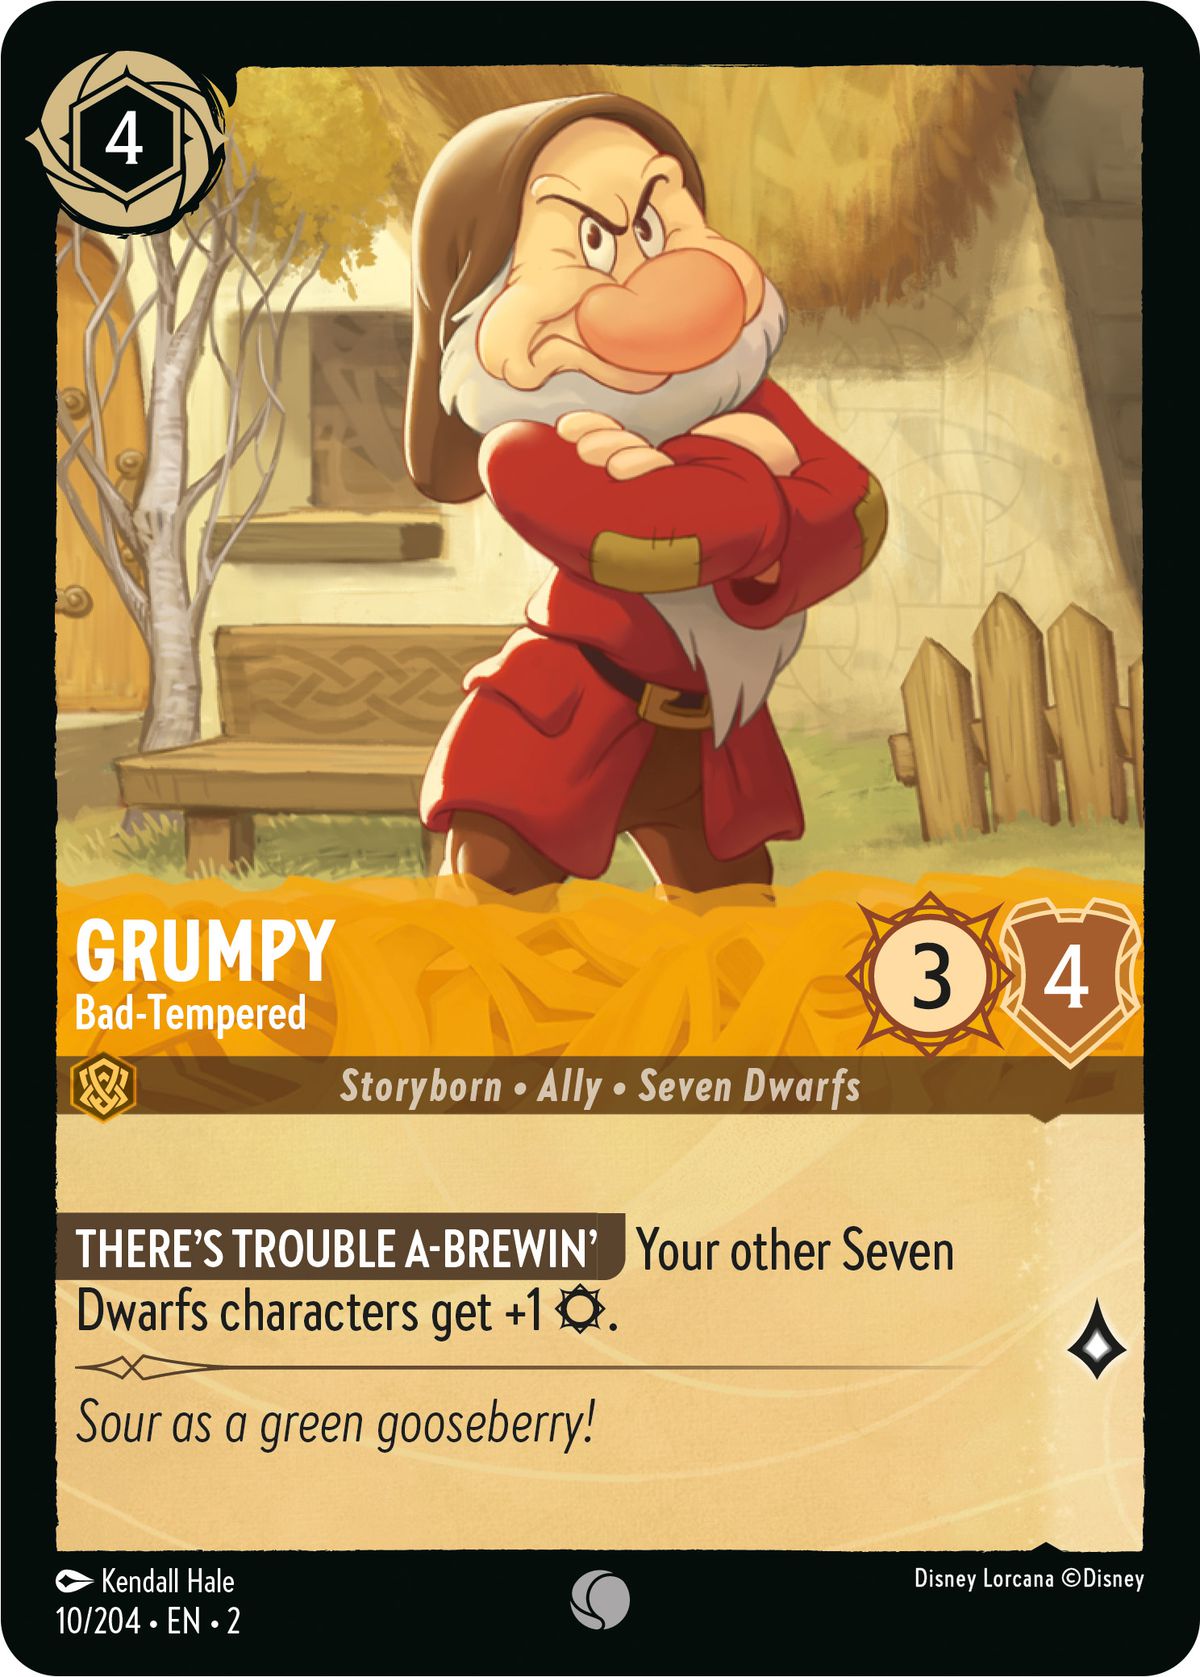 Grumpy, Bad-Tempered est un personnage de 3, 4 sept nains qui ajoute une attaque aux autres nains.